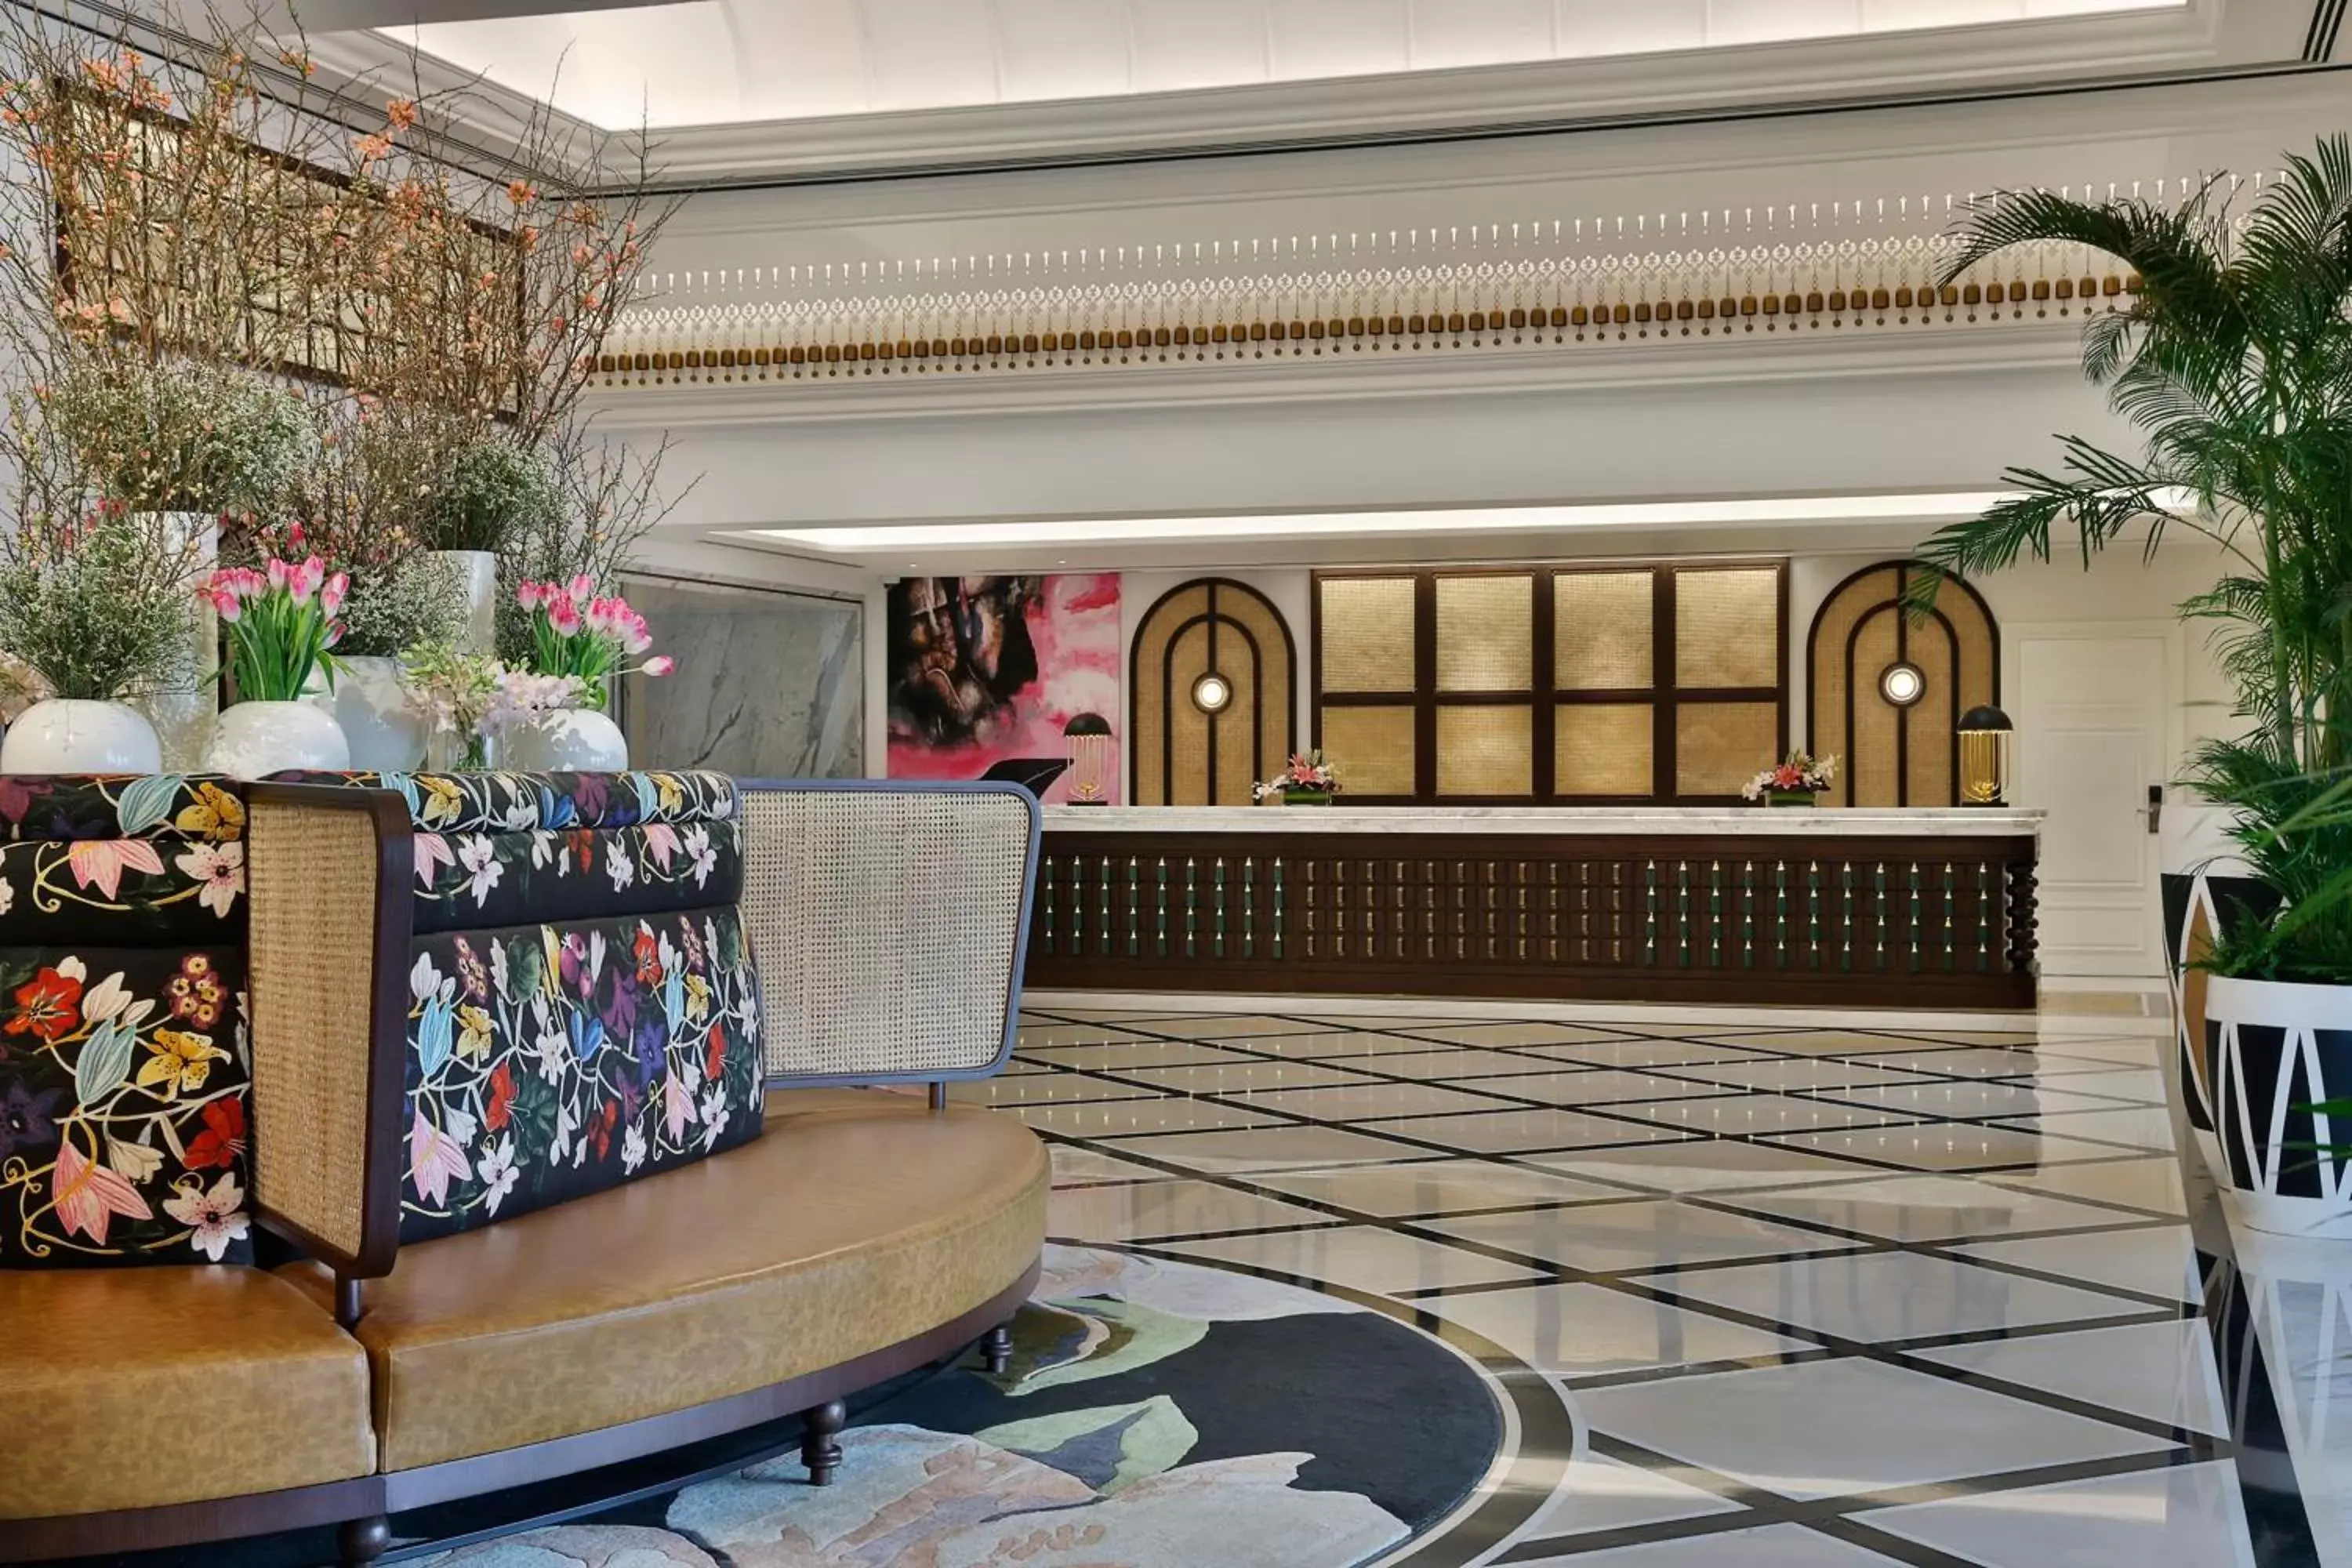 Lobby or reception, Lobby/Reception in The Westin Dubai Mina Seyahi Beach Resort and Waterpark